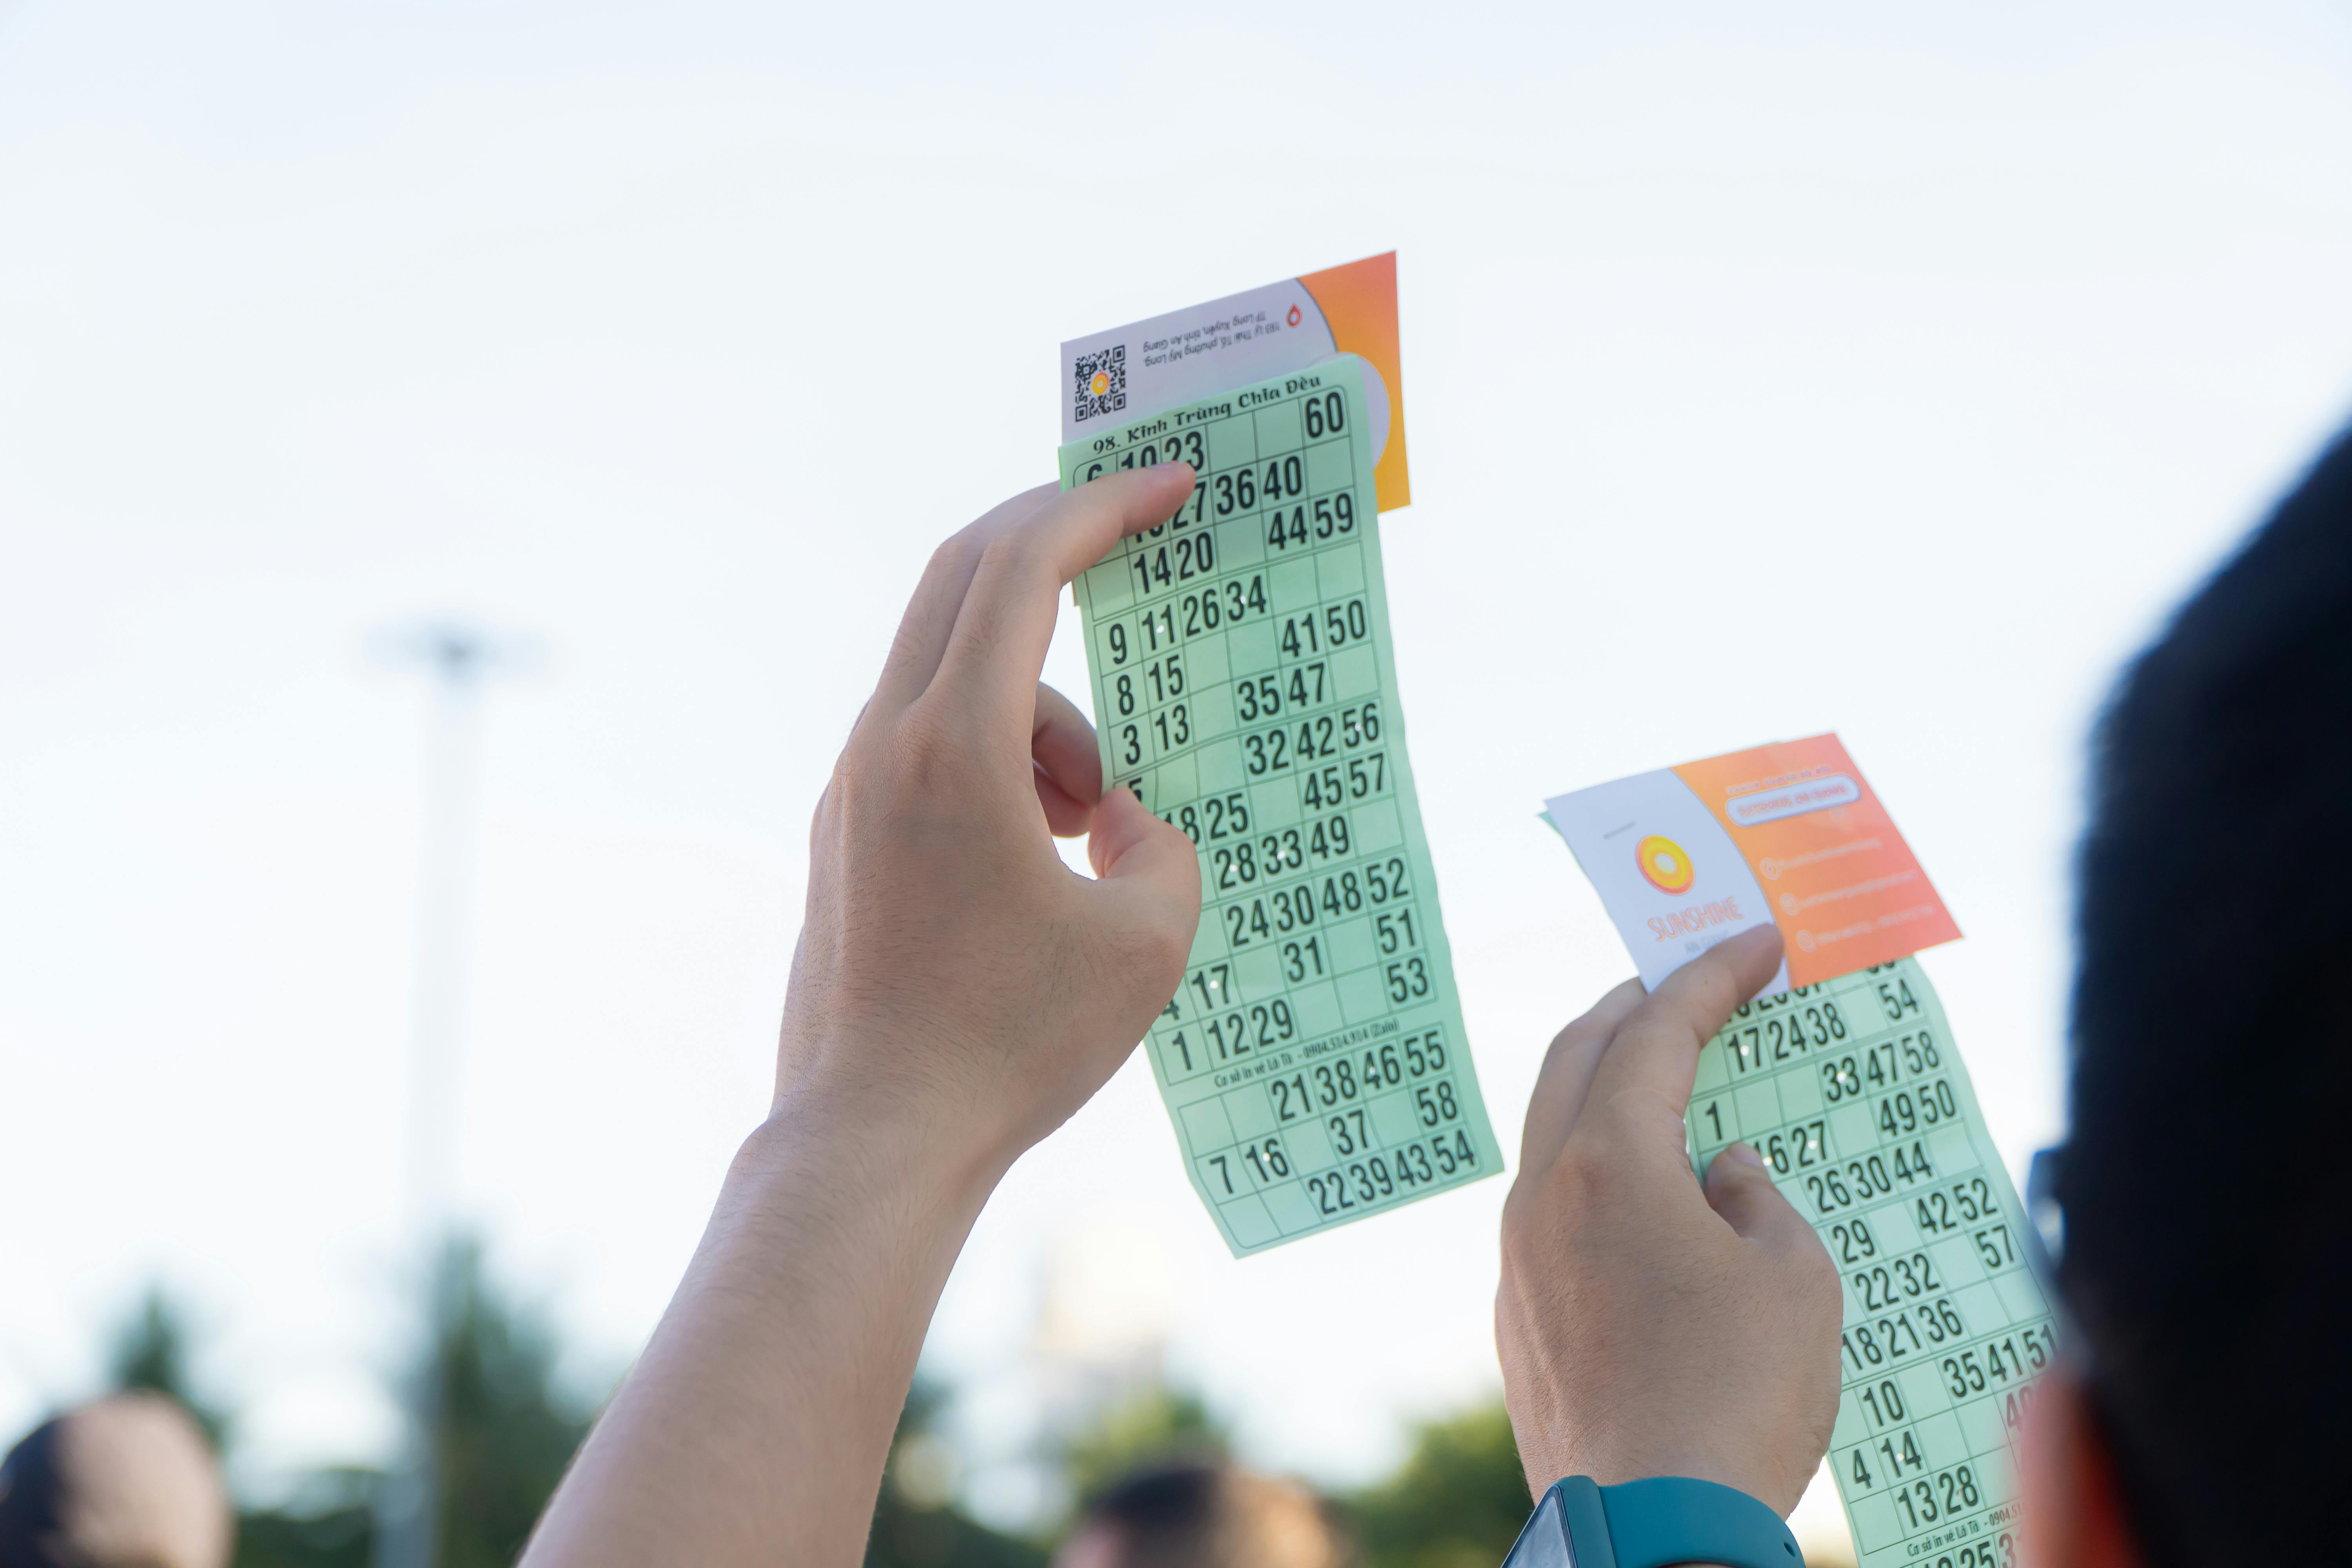 Concert tickets | Source: Pexels